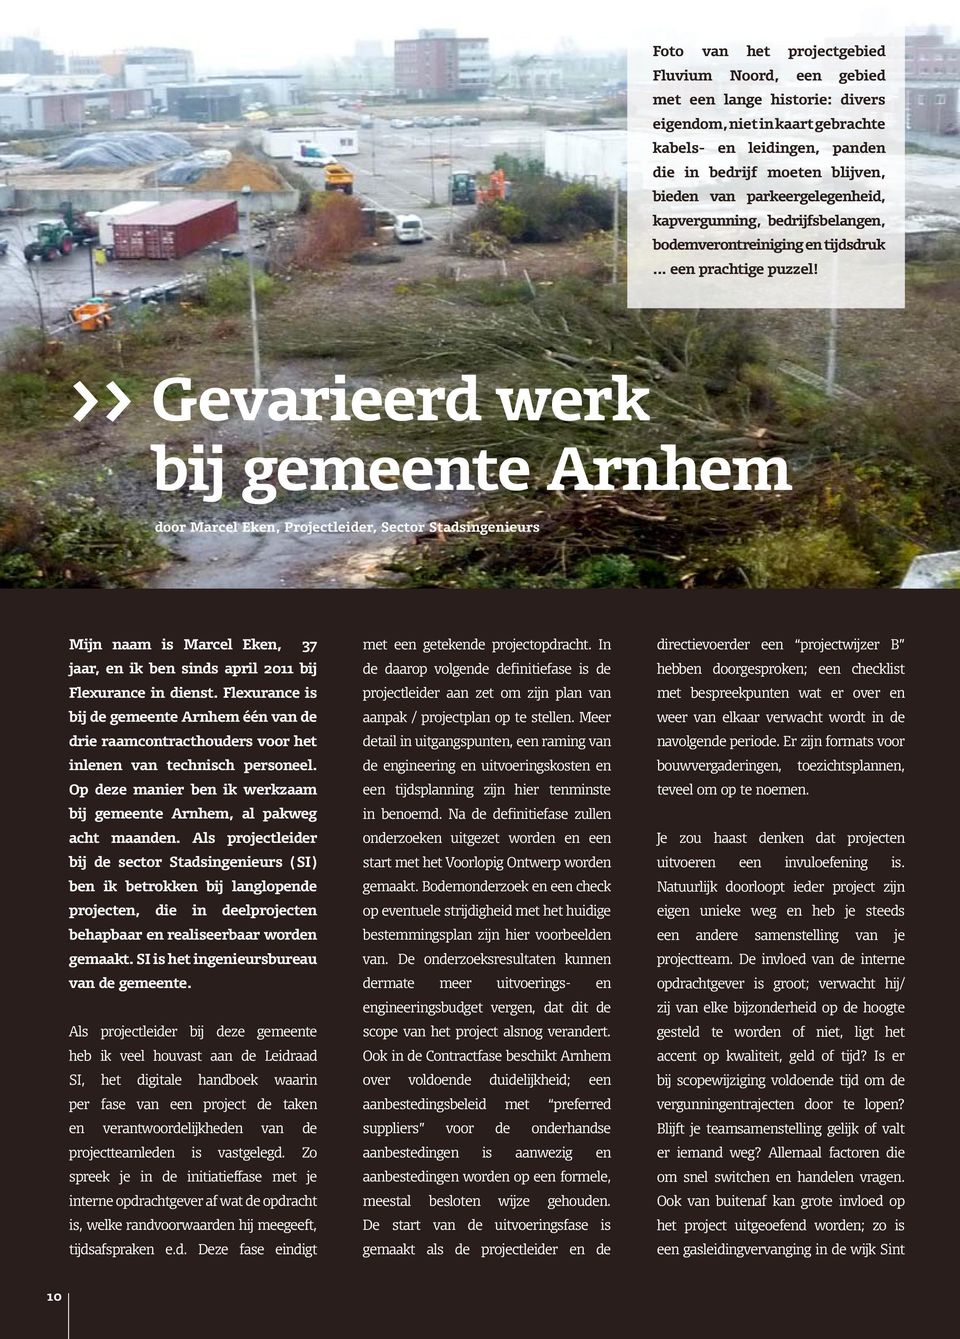 >> Gevarieerd werk bij gemeente Arnhem door Marcel Eken, Projectleider, Sector Stadsingenieurs Mijn naam is Marcel Eken, 37 jaar, en ik ben sinds april 2011 bij Flexurance in dienst.